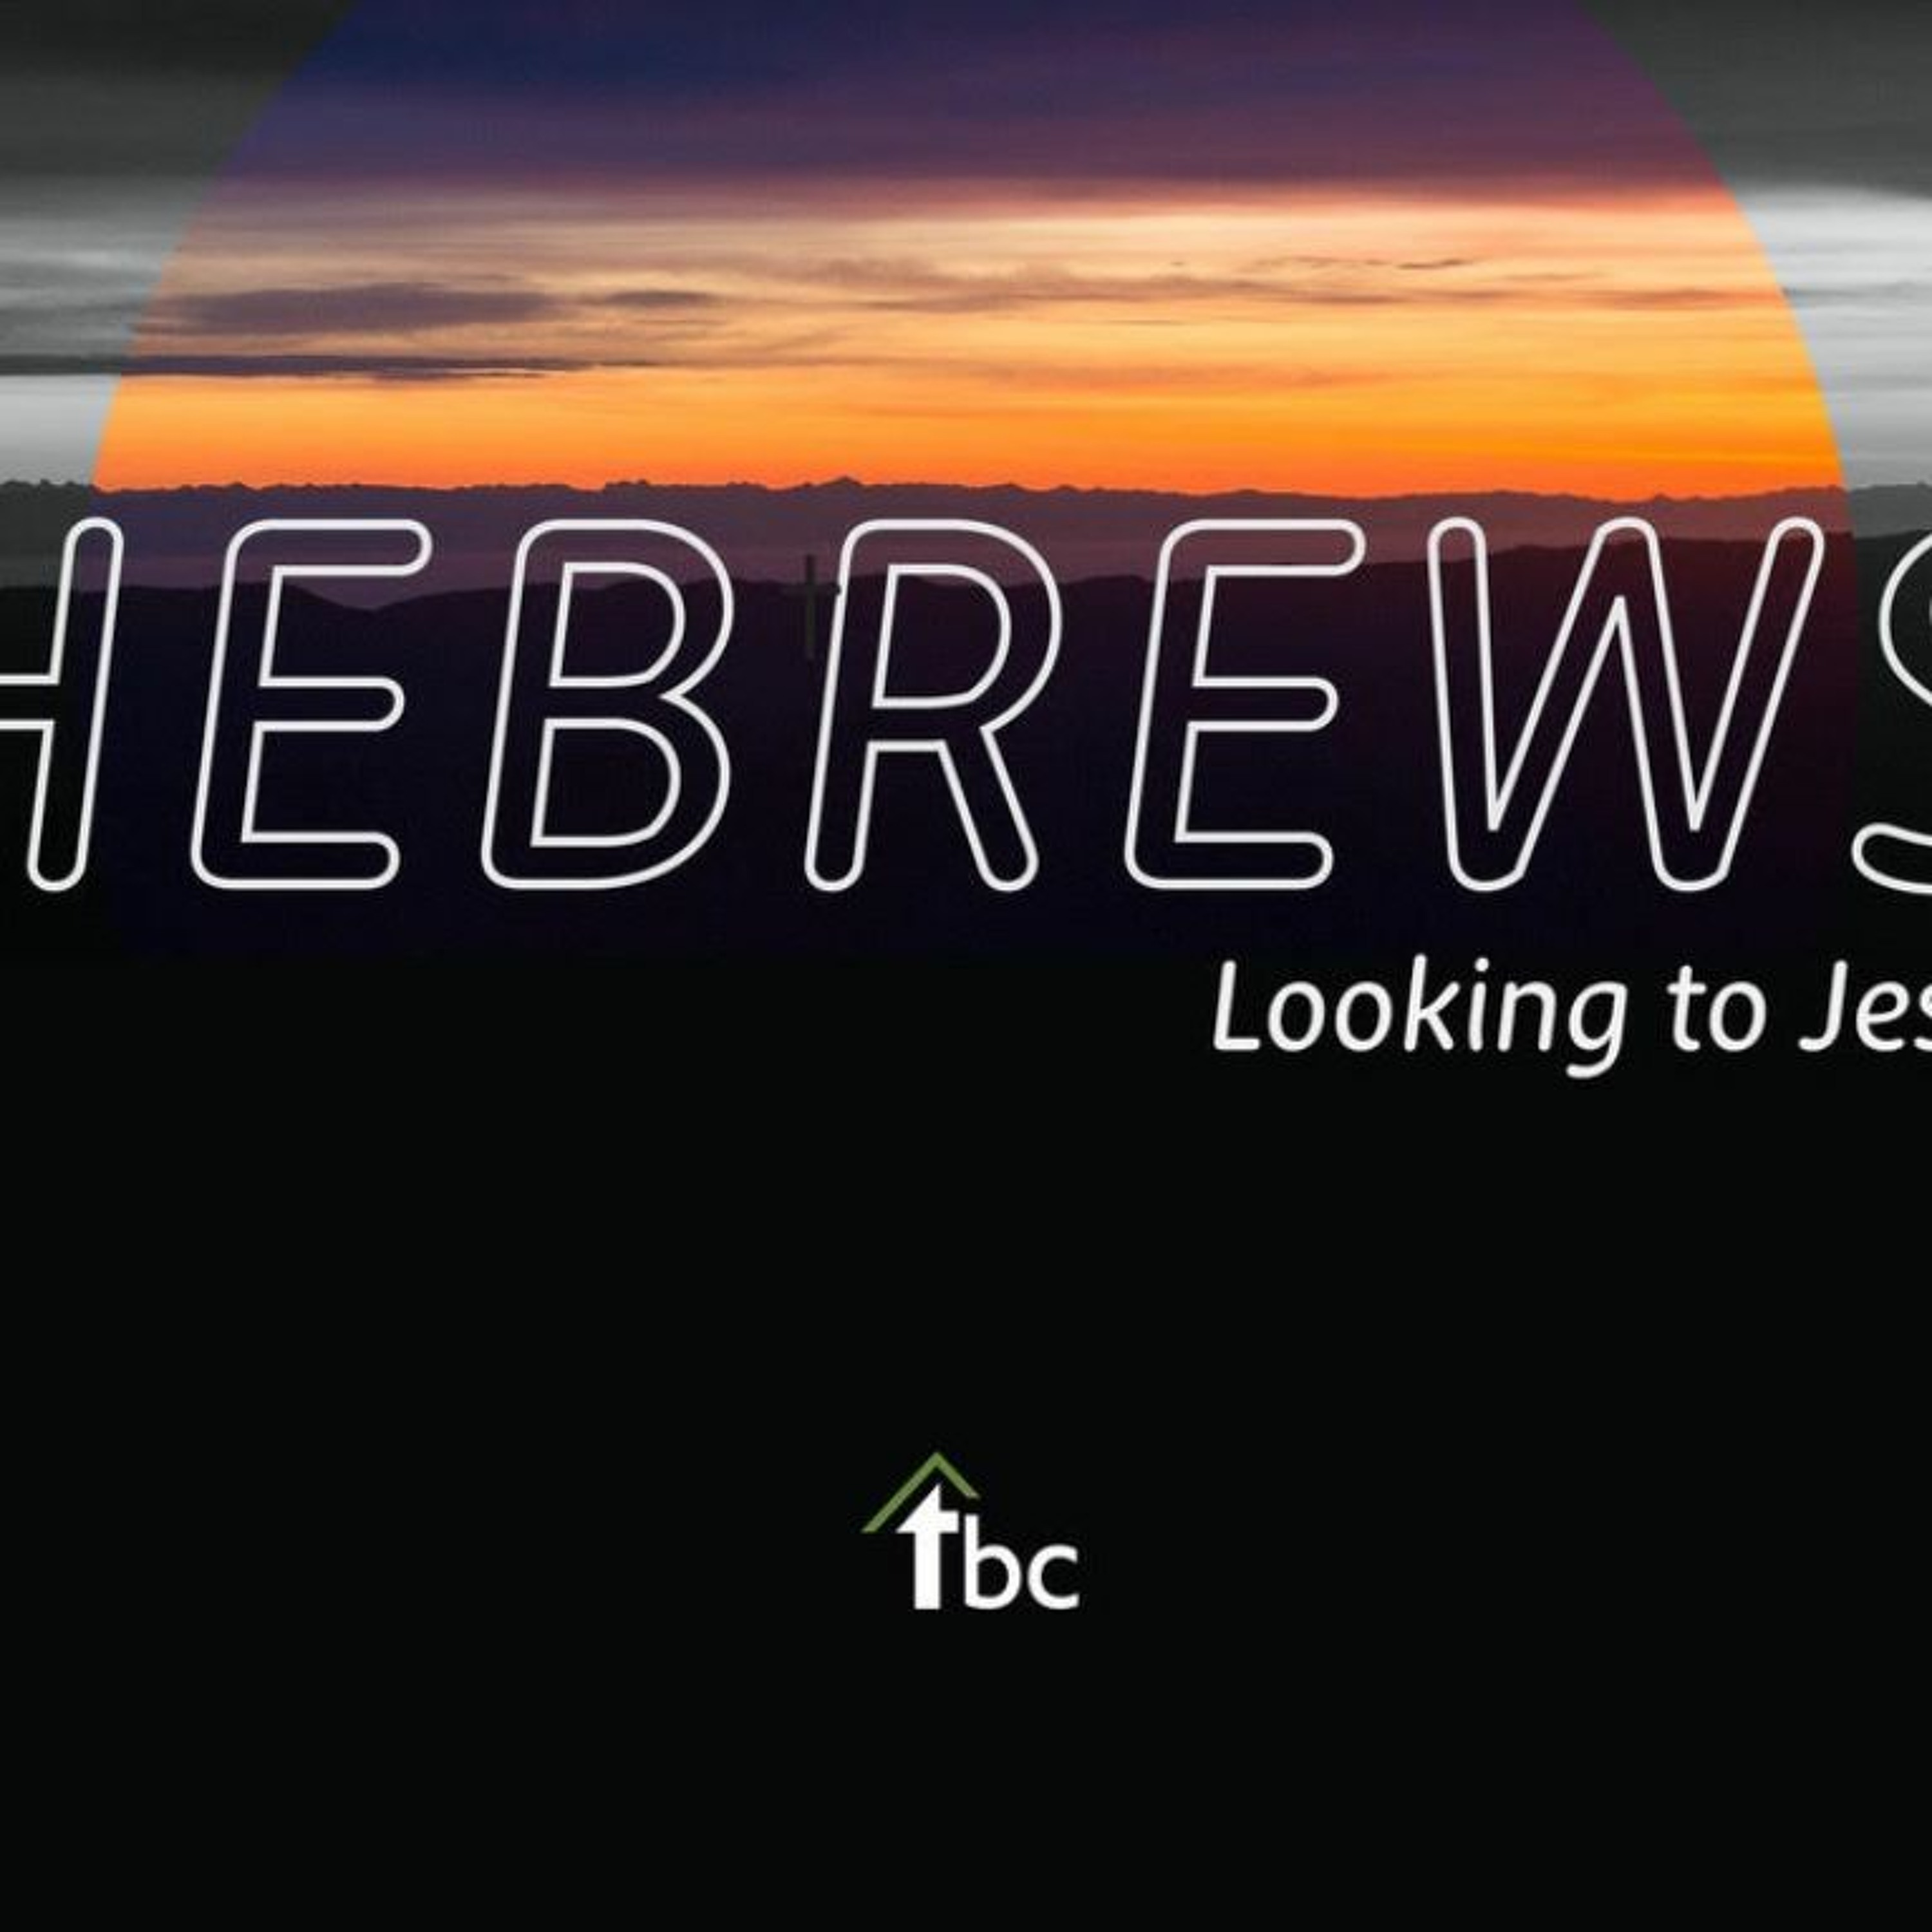 Run (Hebrews 12:1-3)